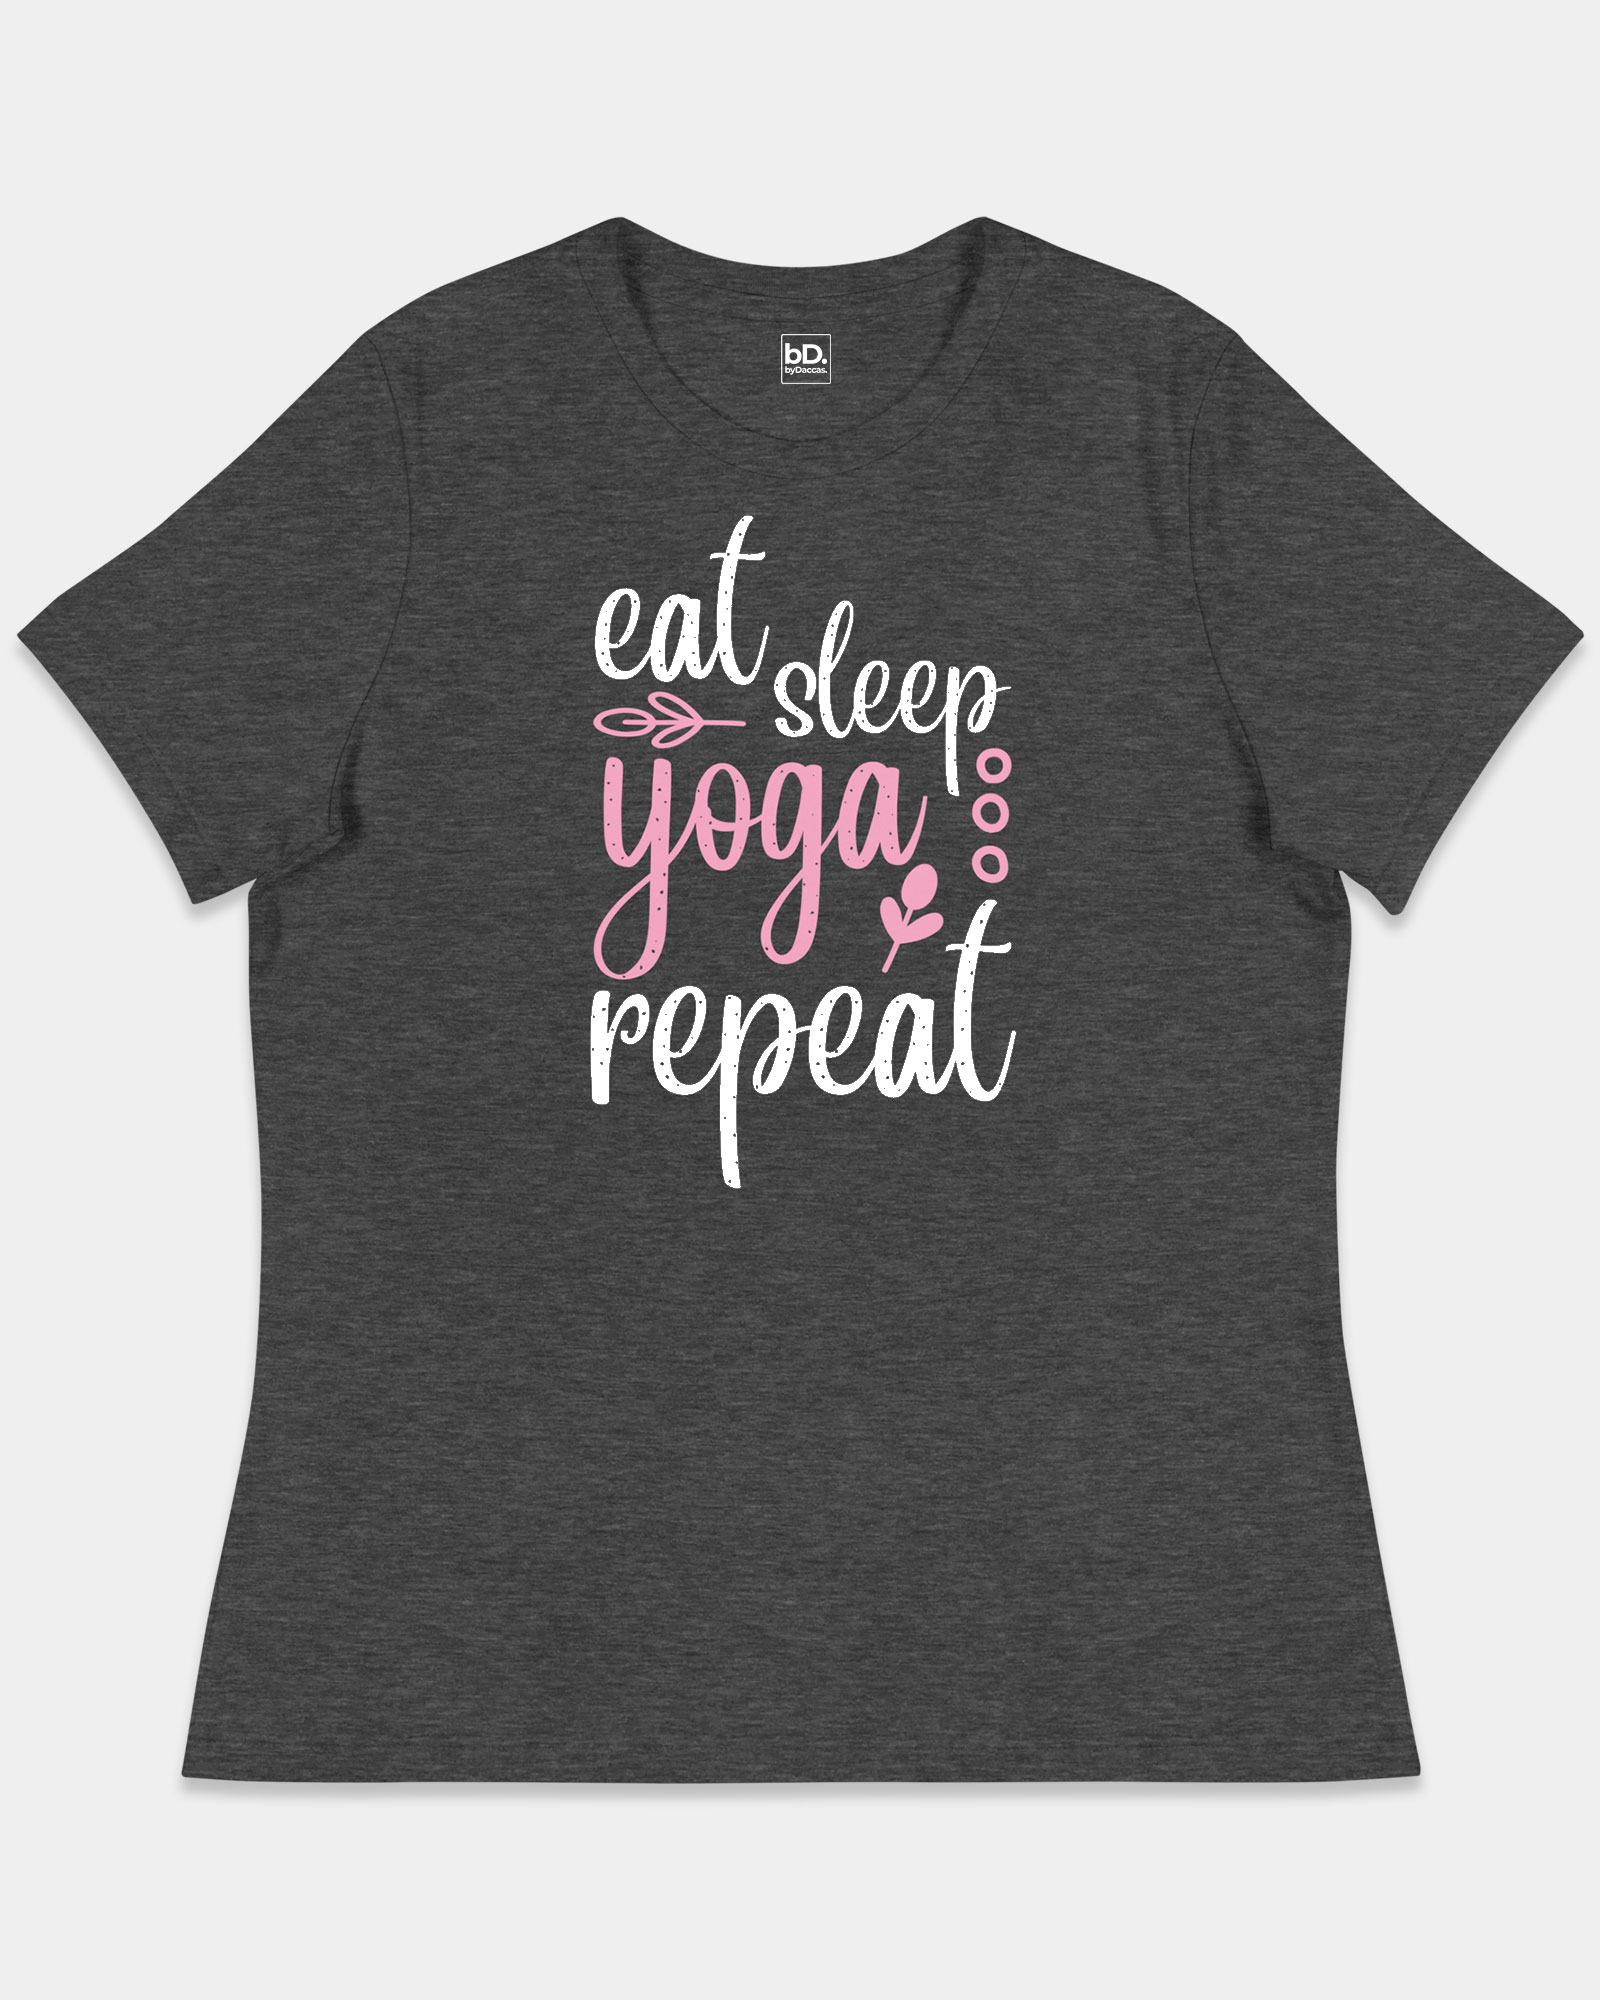 Eat Sleep Yoga Repeat tshirt